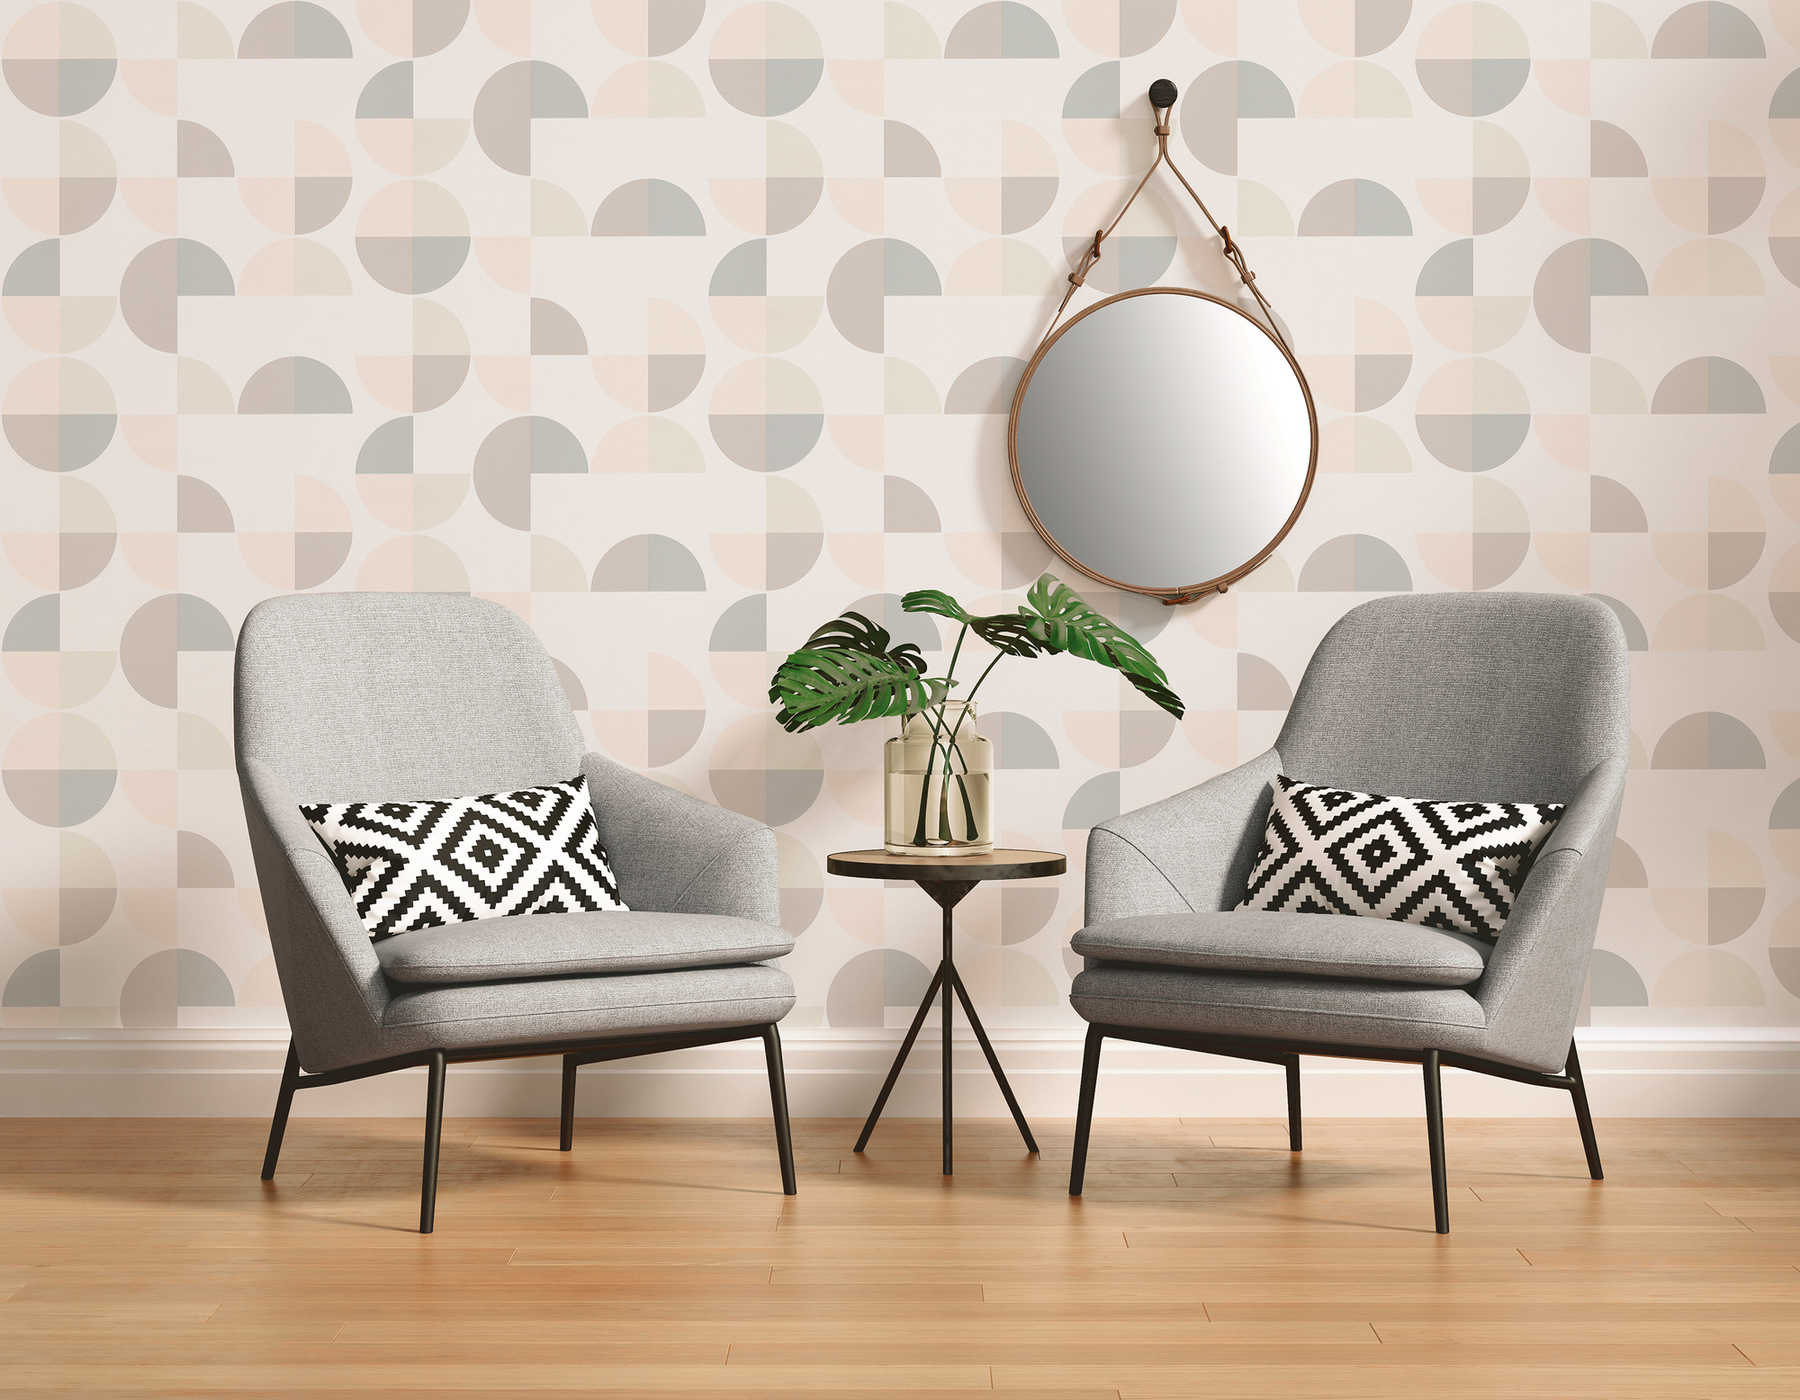             Scandinavian style geometric pattern wallpaper - grey, pink, beige
        